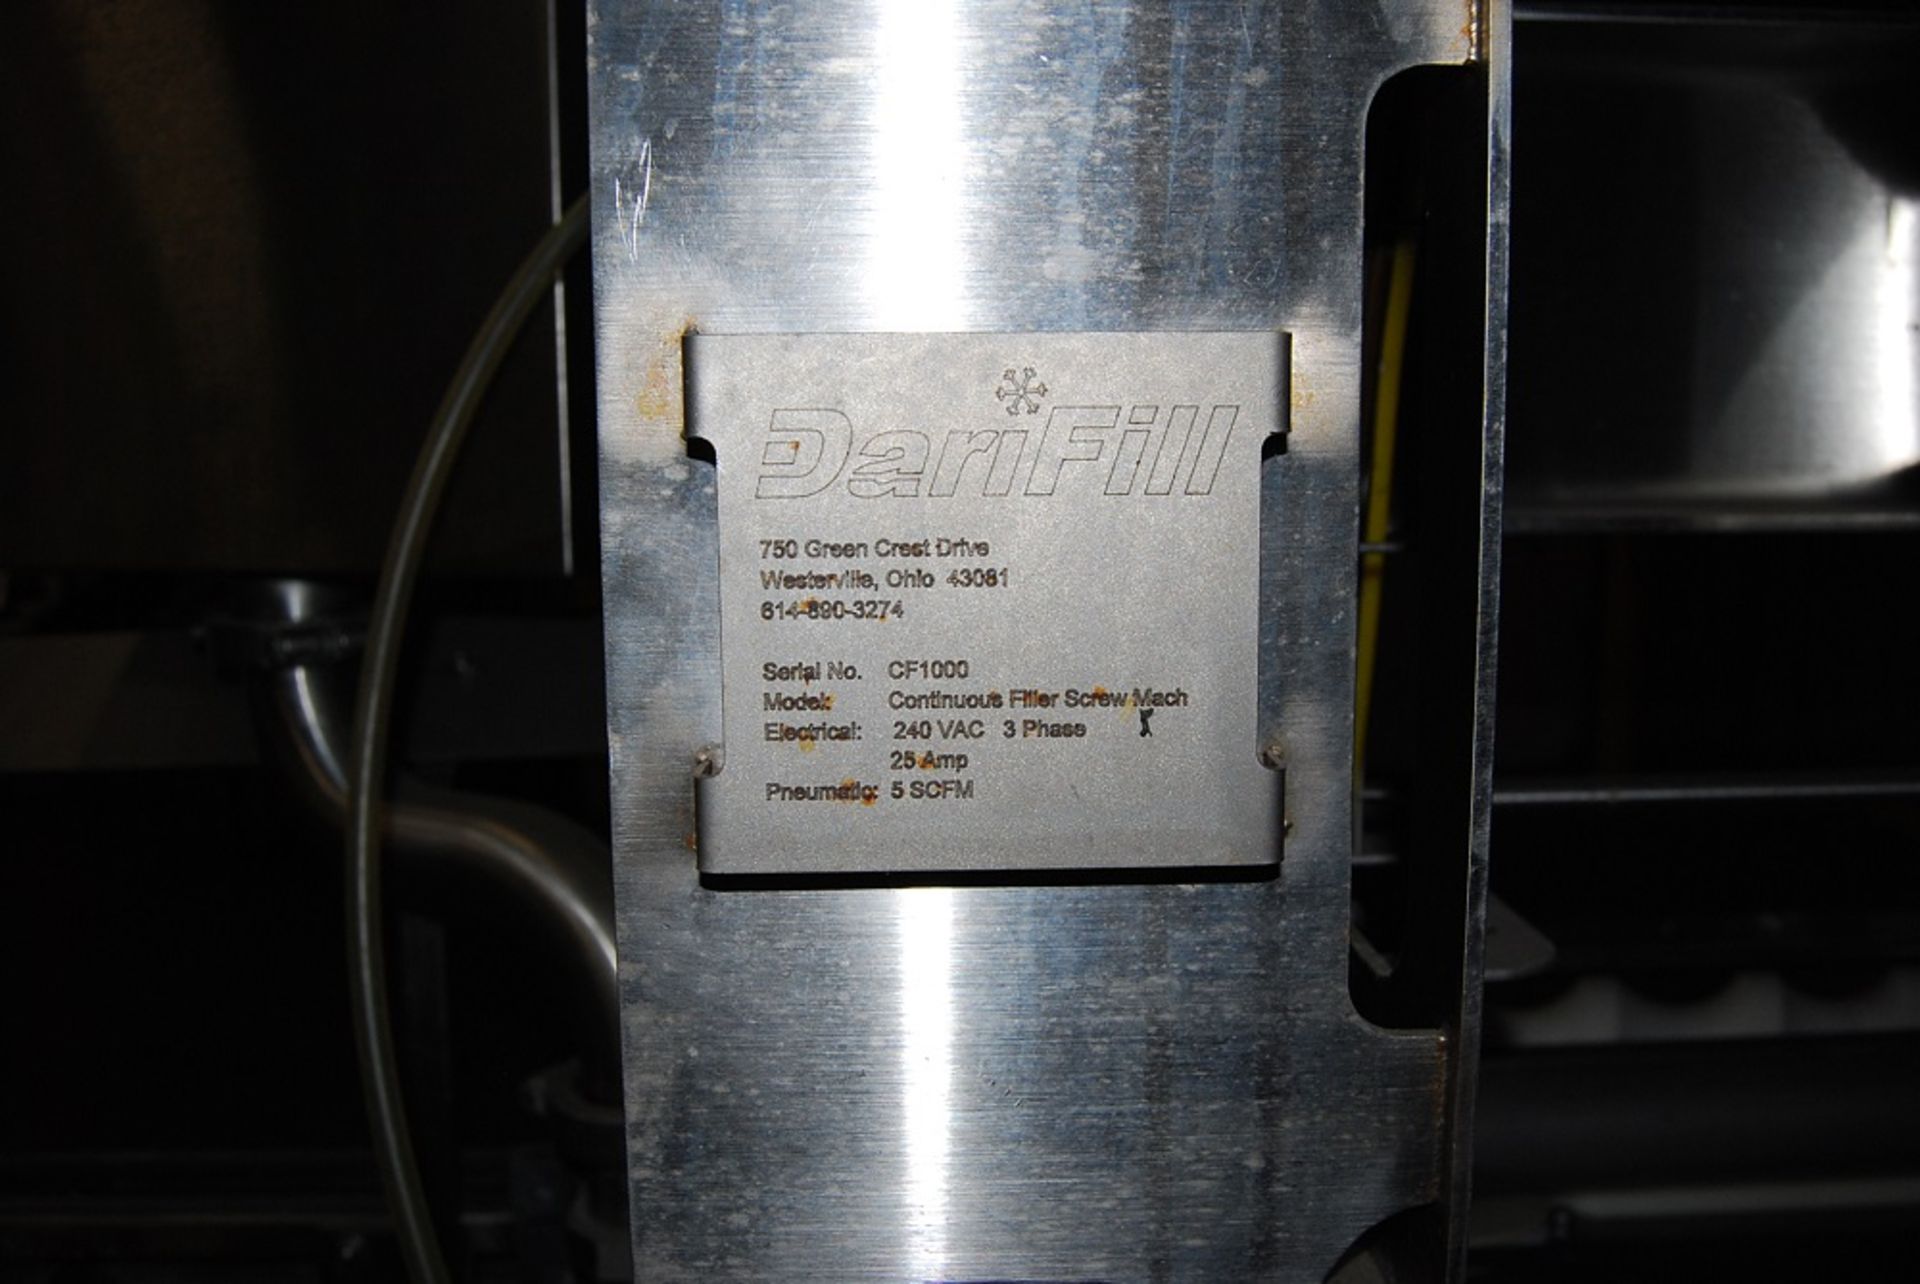 Dari Fill Filler, Model: Continuous Filler Screw Machine, SN: CF1000, Timing Screw 36" long Conveyor - Image 8 of 12